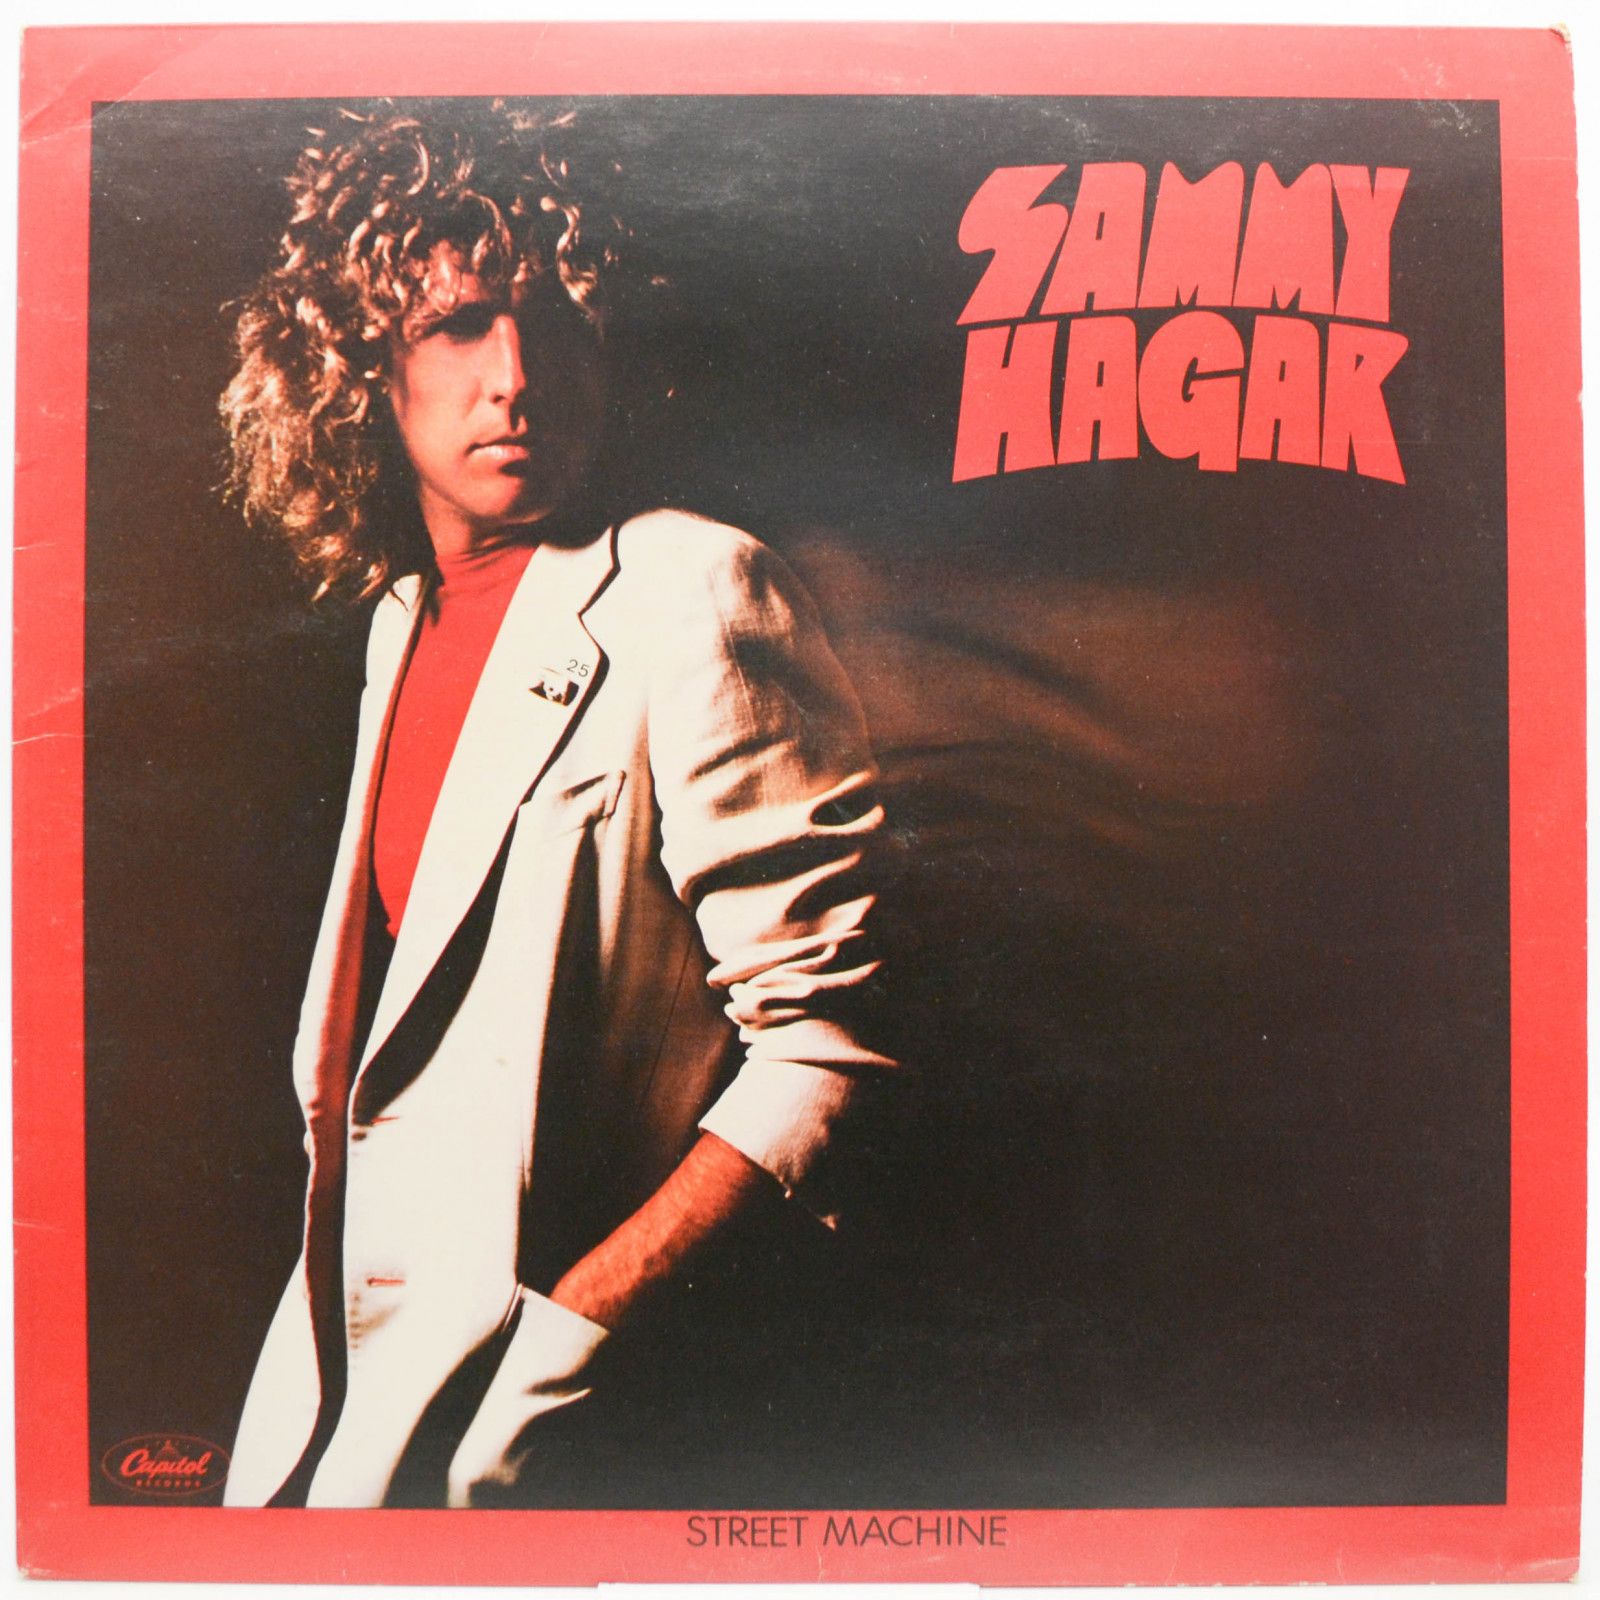 Sammy Hagar — Street Machine (UK), 1979